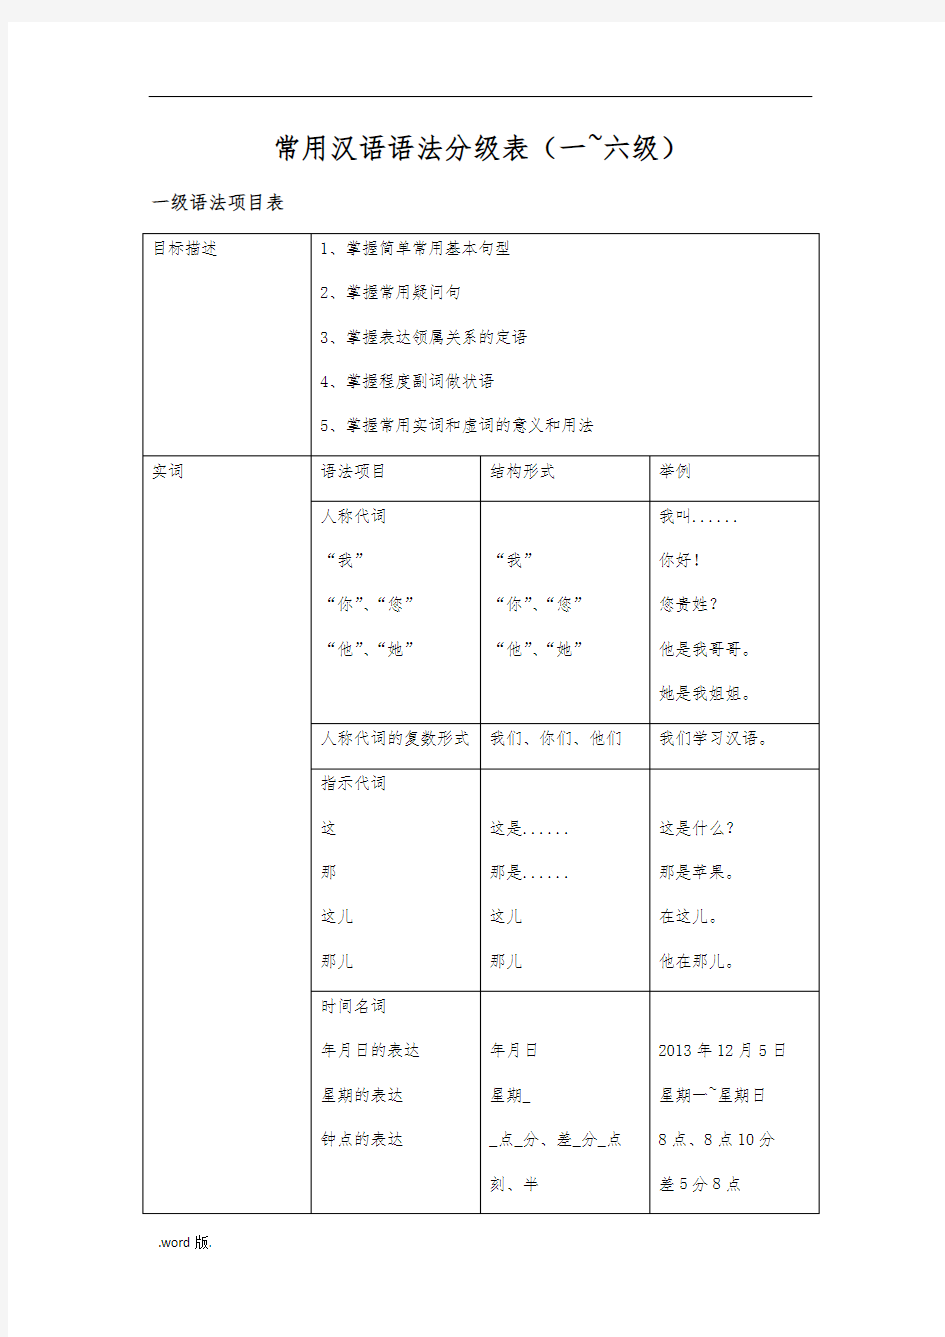 常用汉语语法分级表修订版资料全